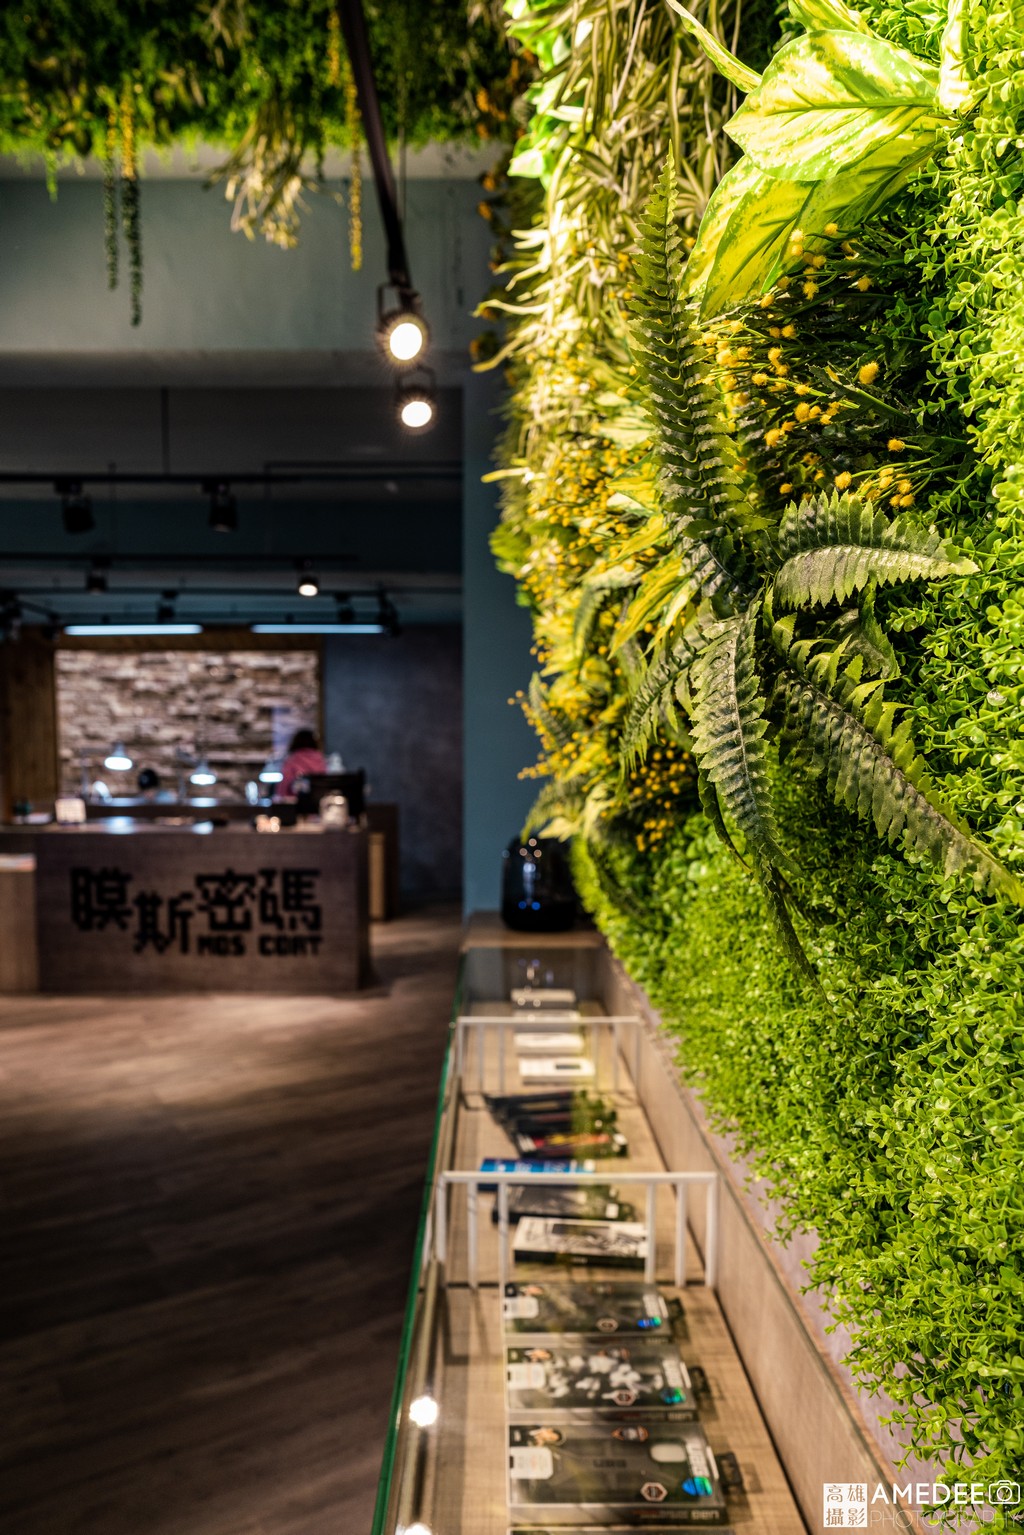 膜斯密碼高雄店店面植物造景空間攝影